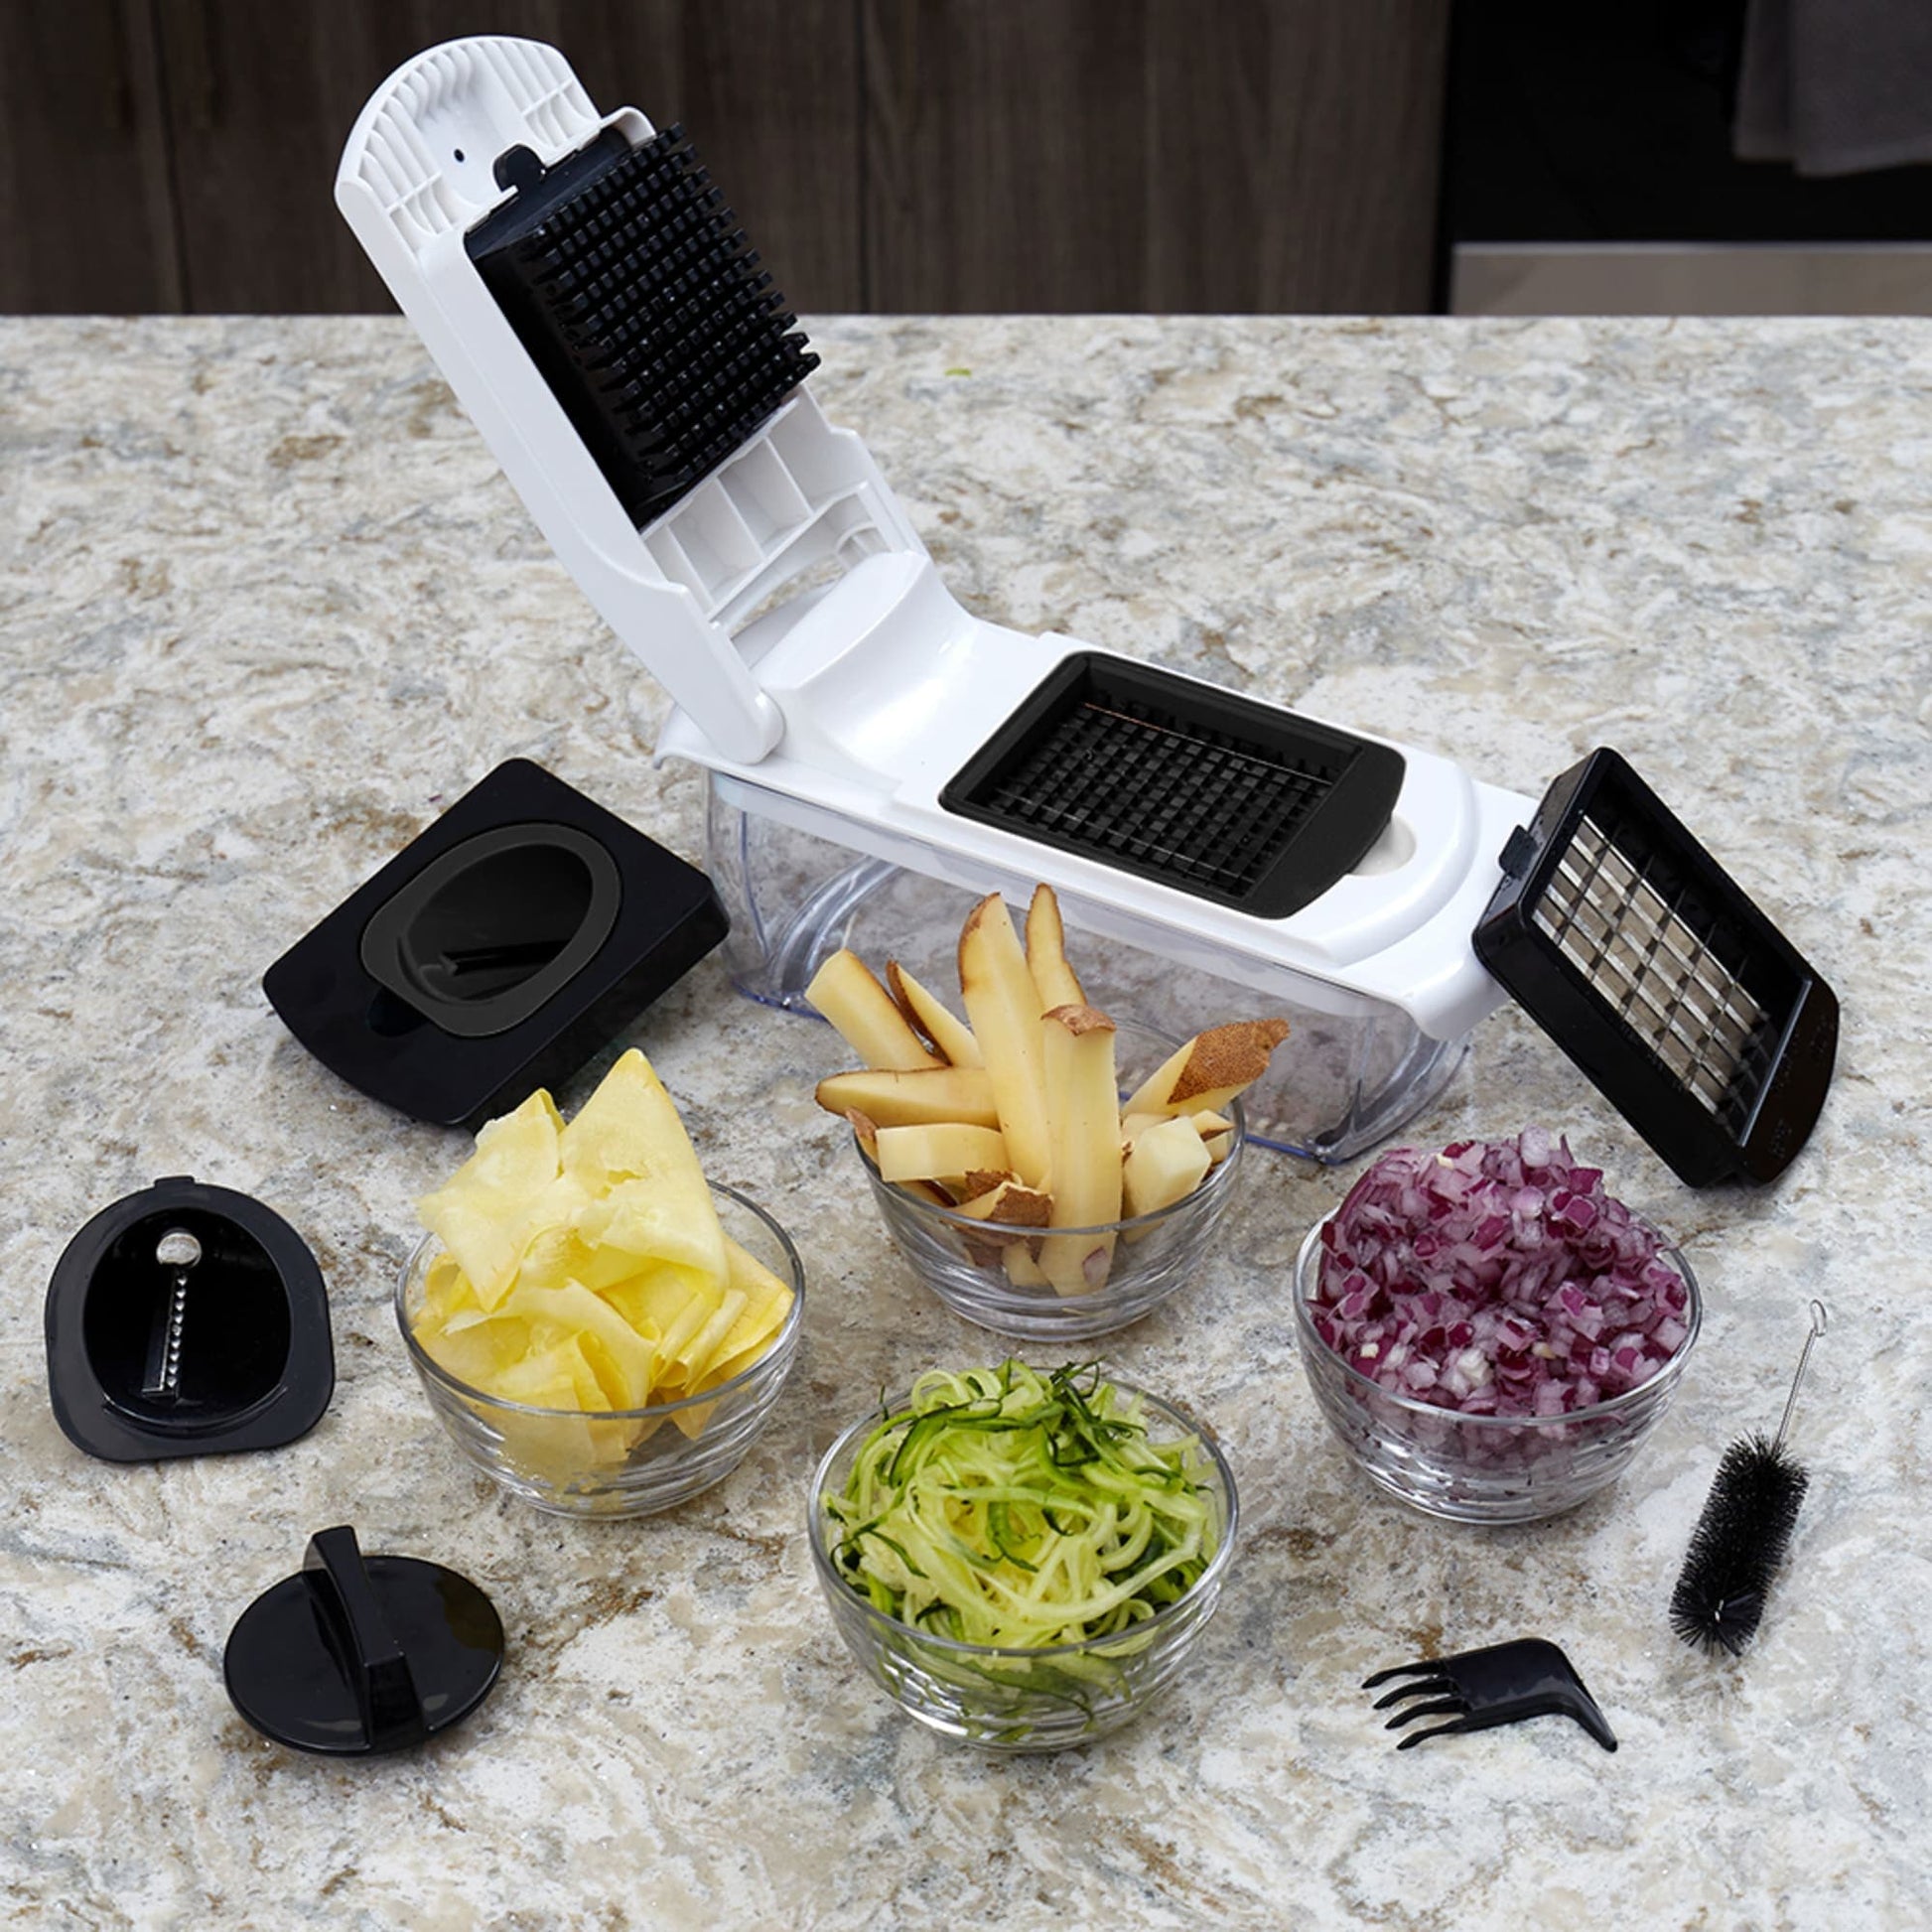 Home Basics 3-In-1 Handheld Vegetable Spiralizer Slicer